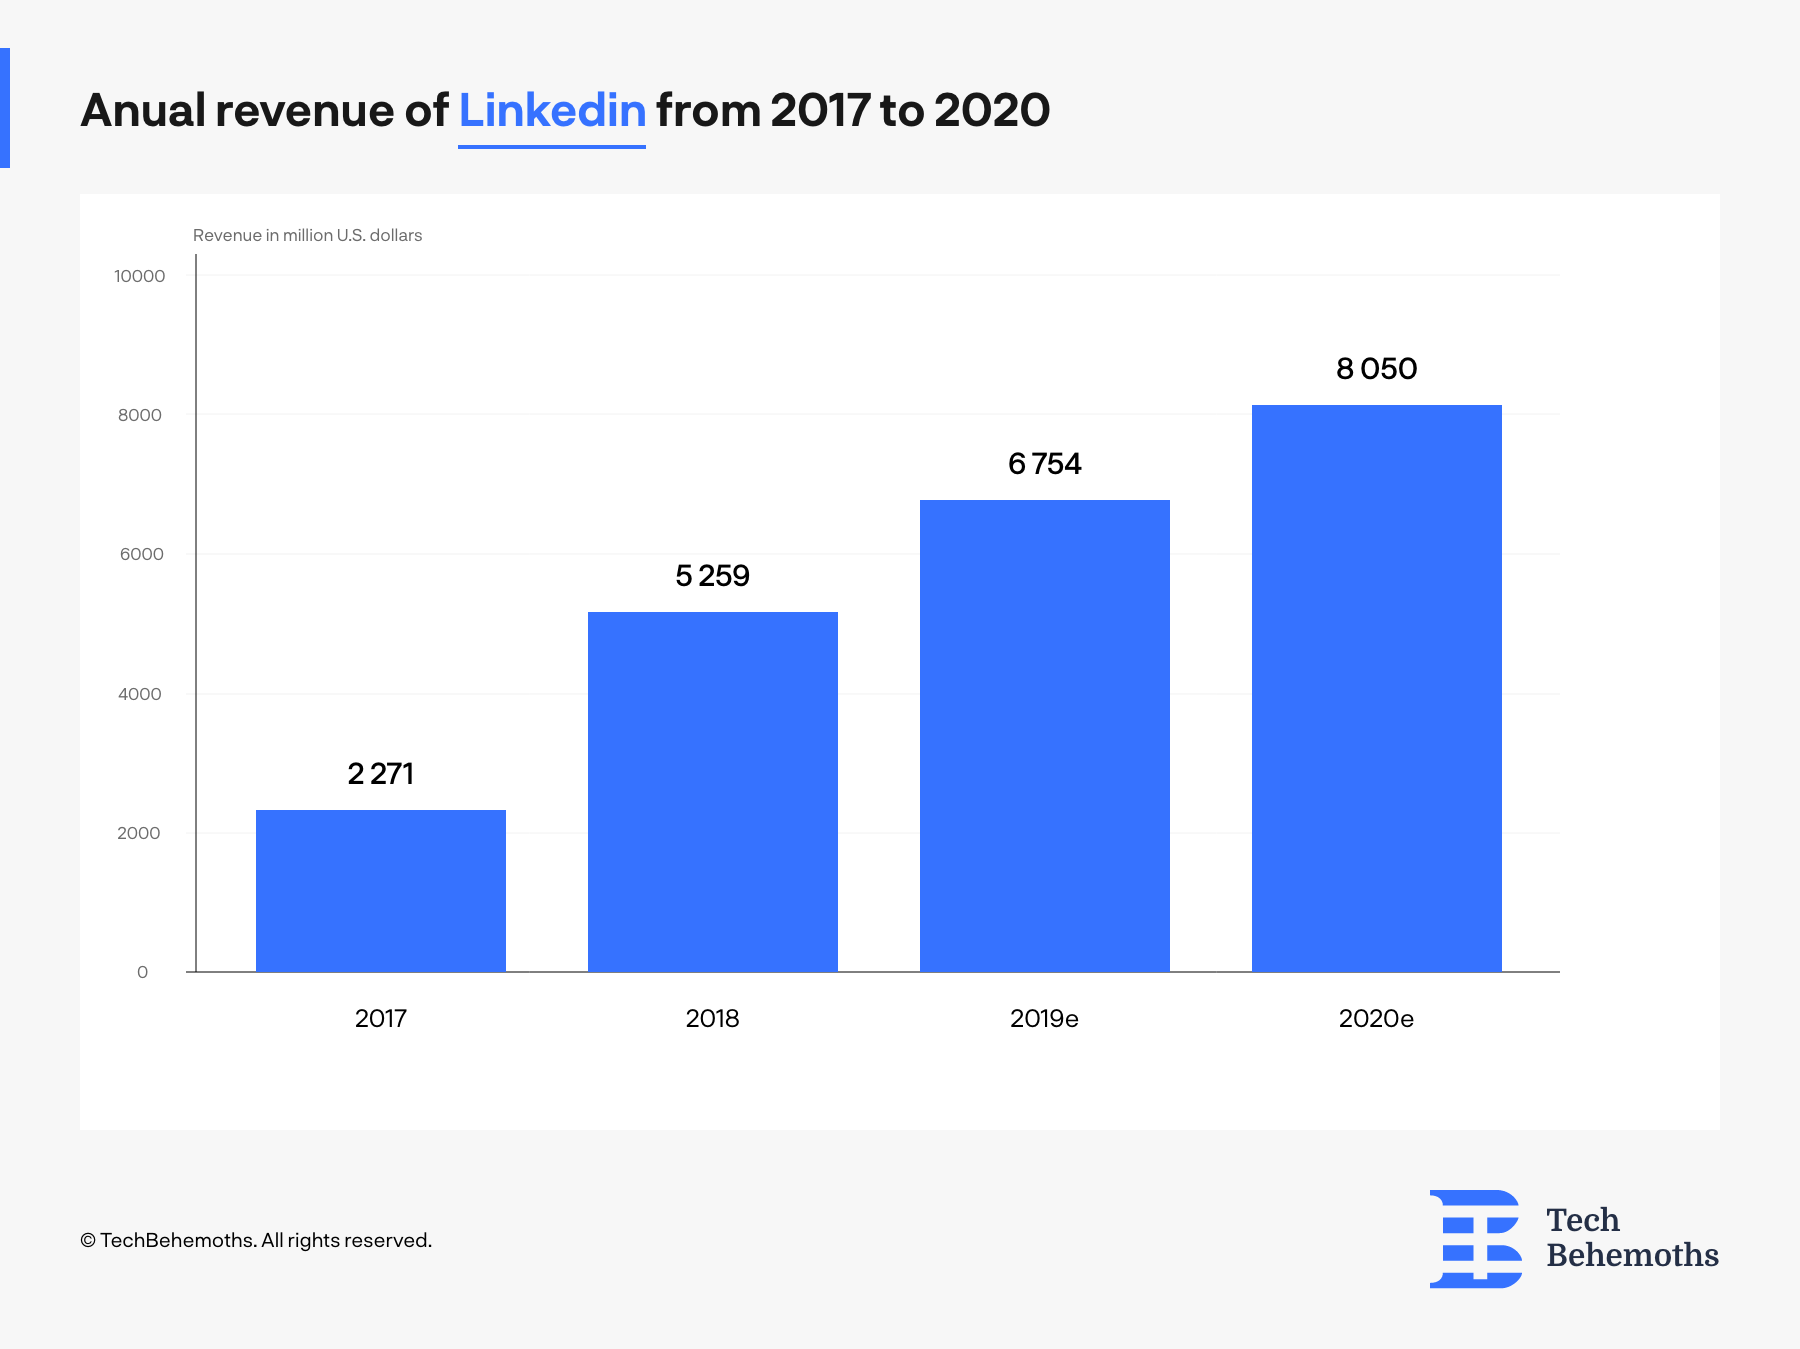 Annual revenue linkedin 2017-2020